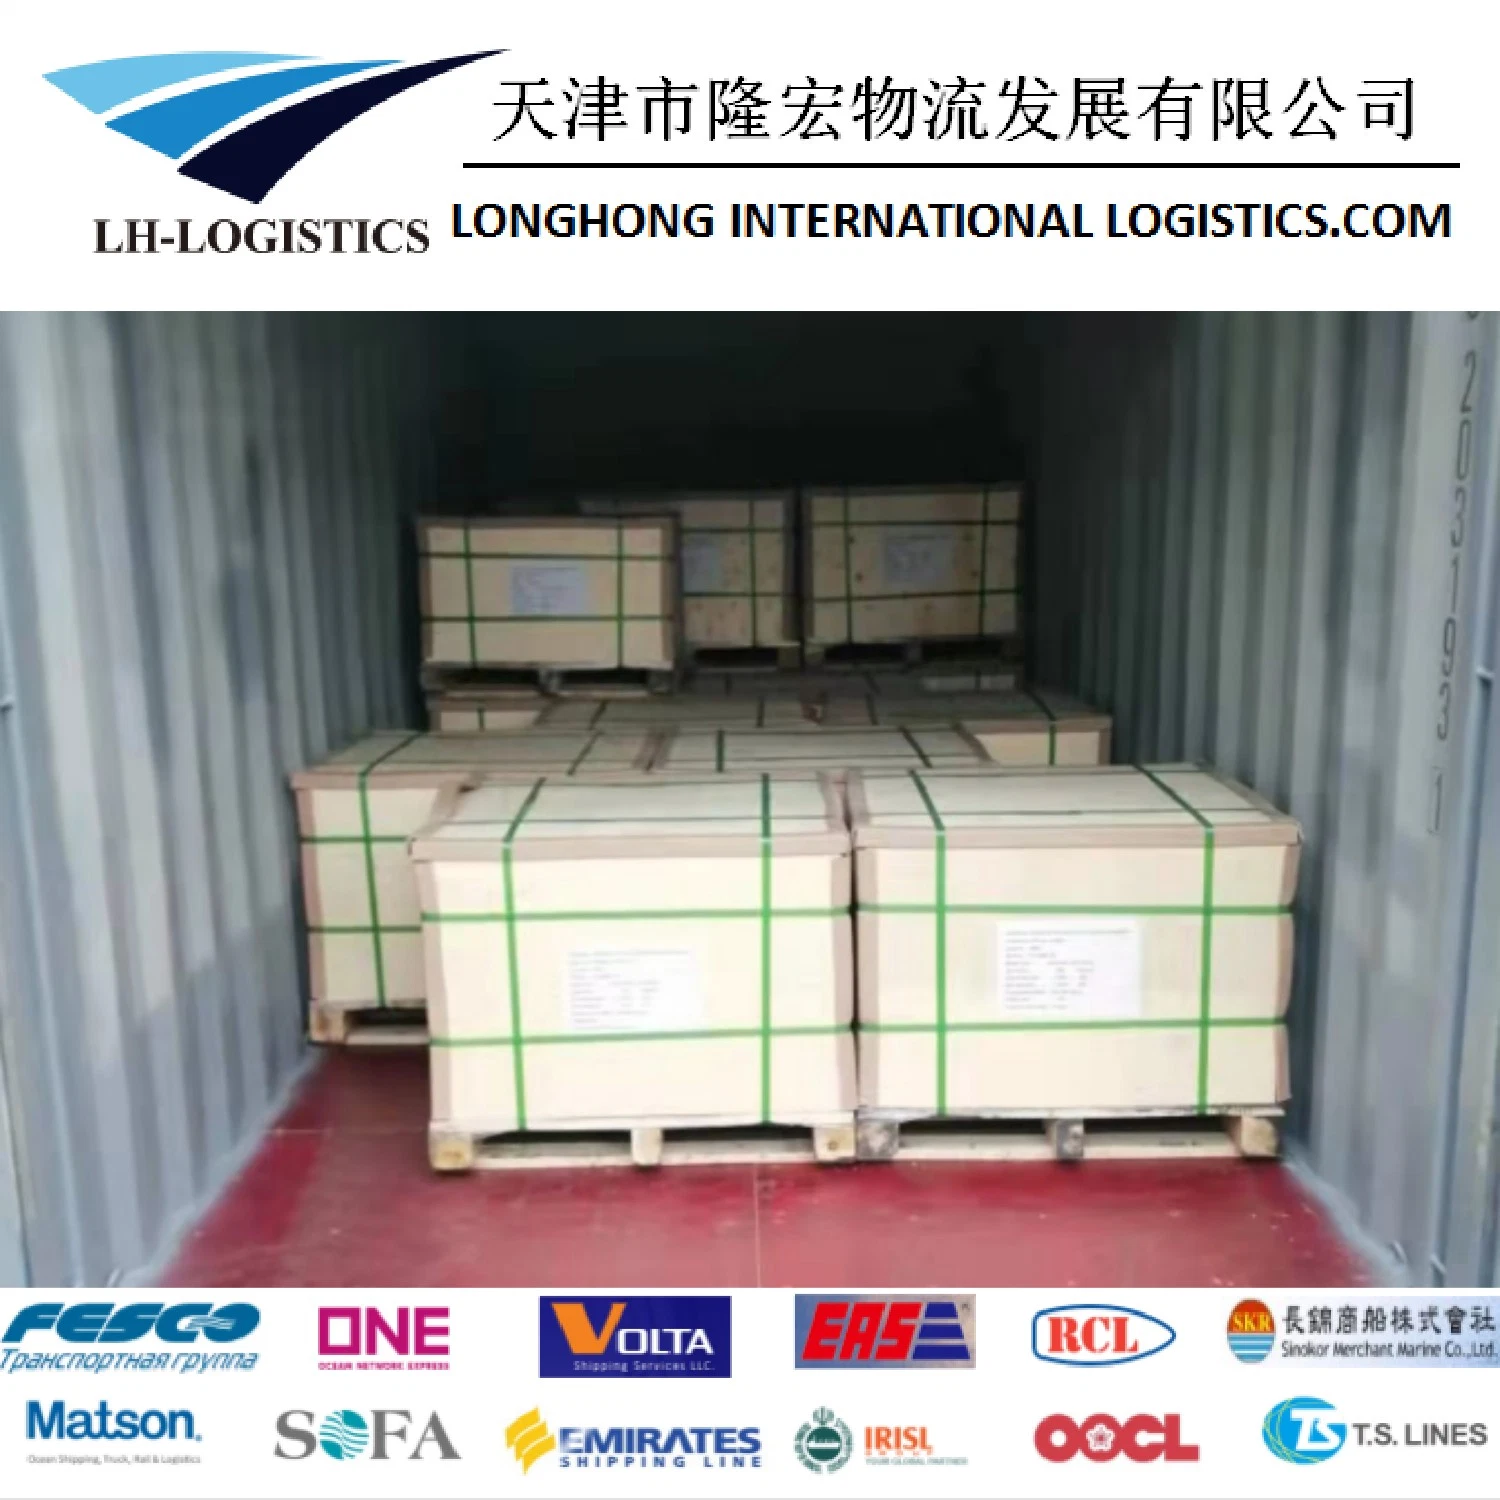 Servicio de Envío profesional desde China a Ho Chi Minh, Sudeste de Asia. Logística de barcos de transporte marítimo.